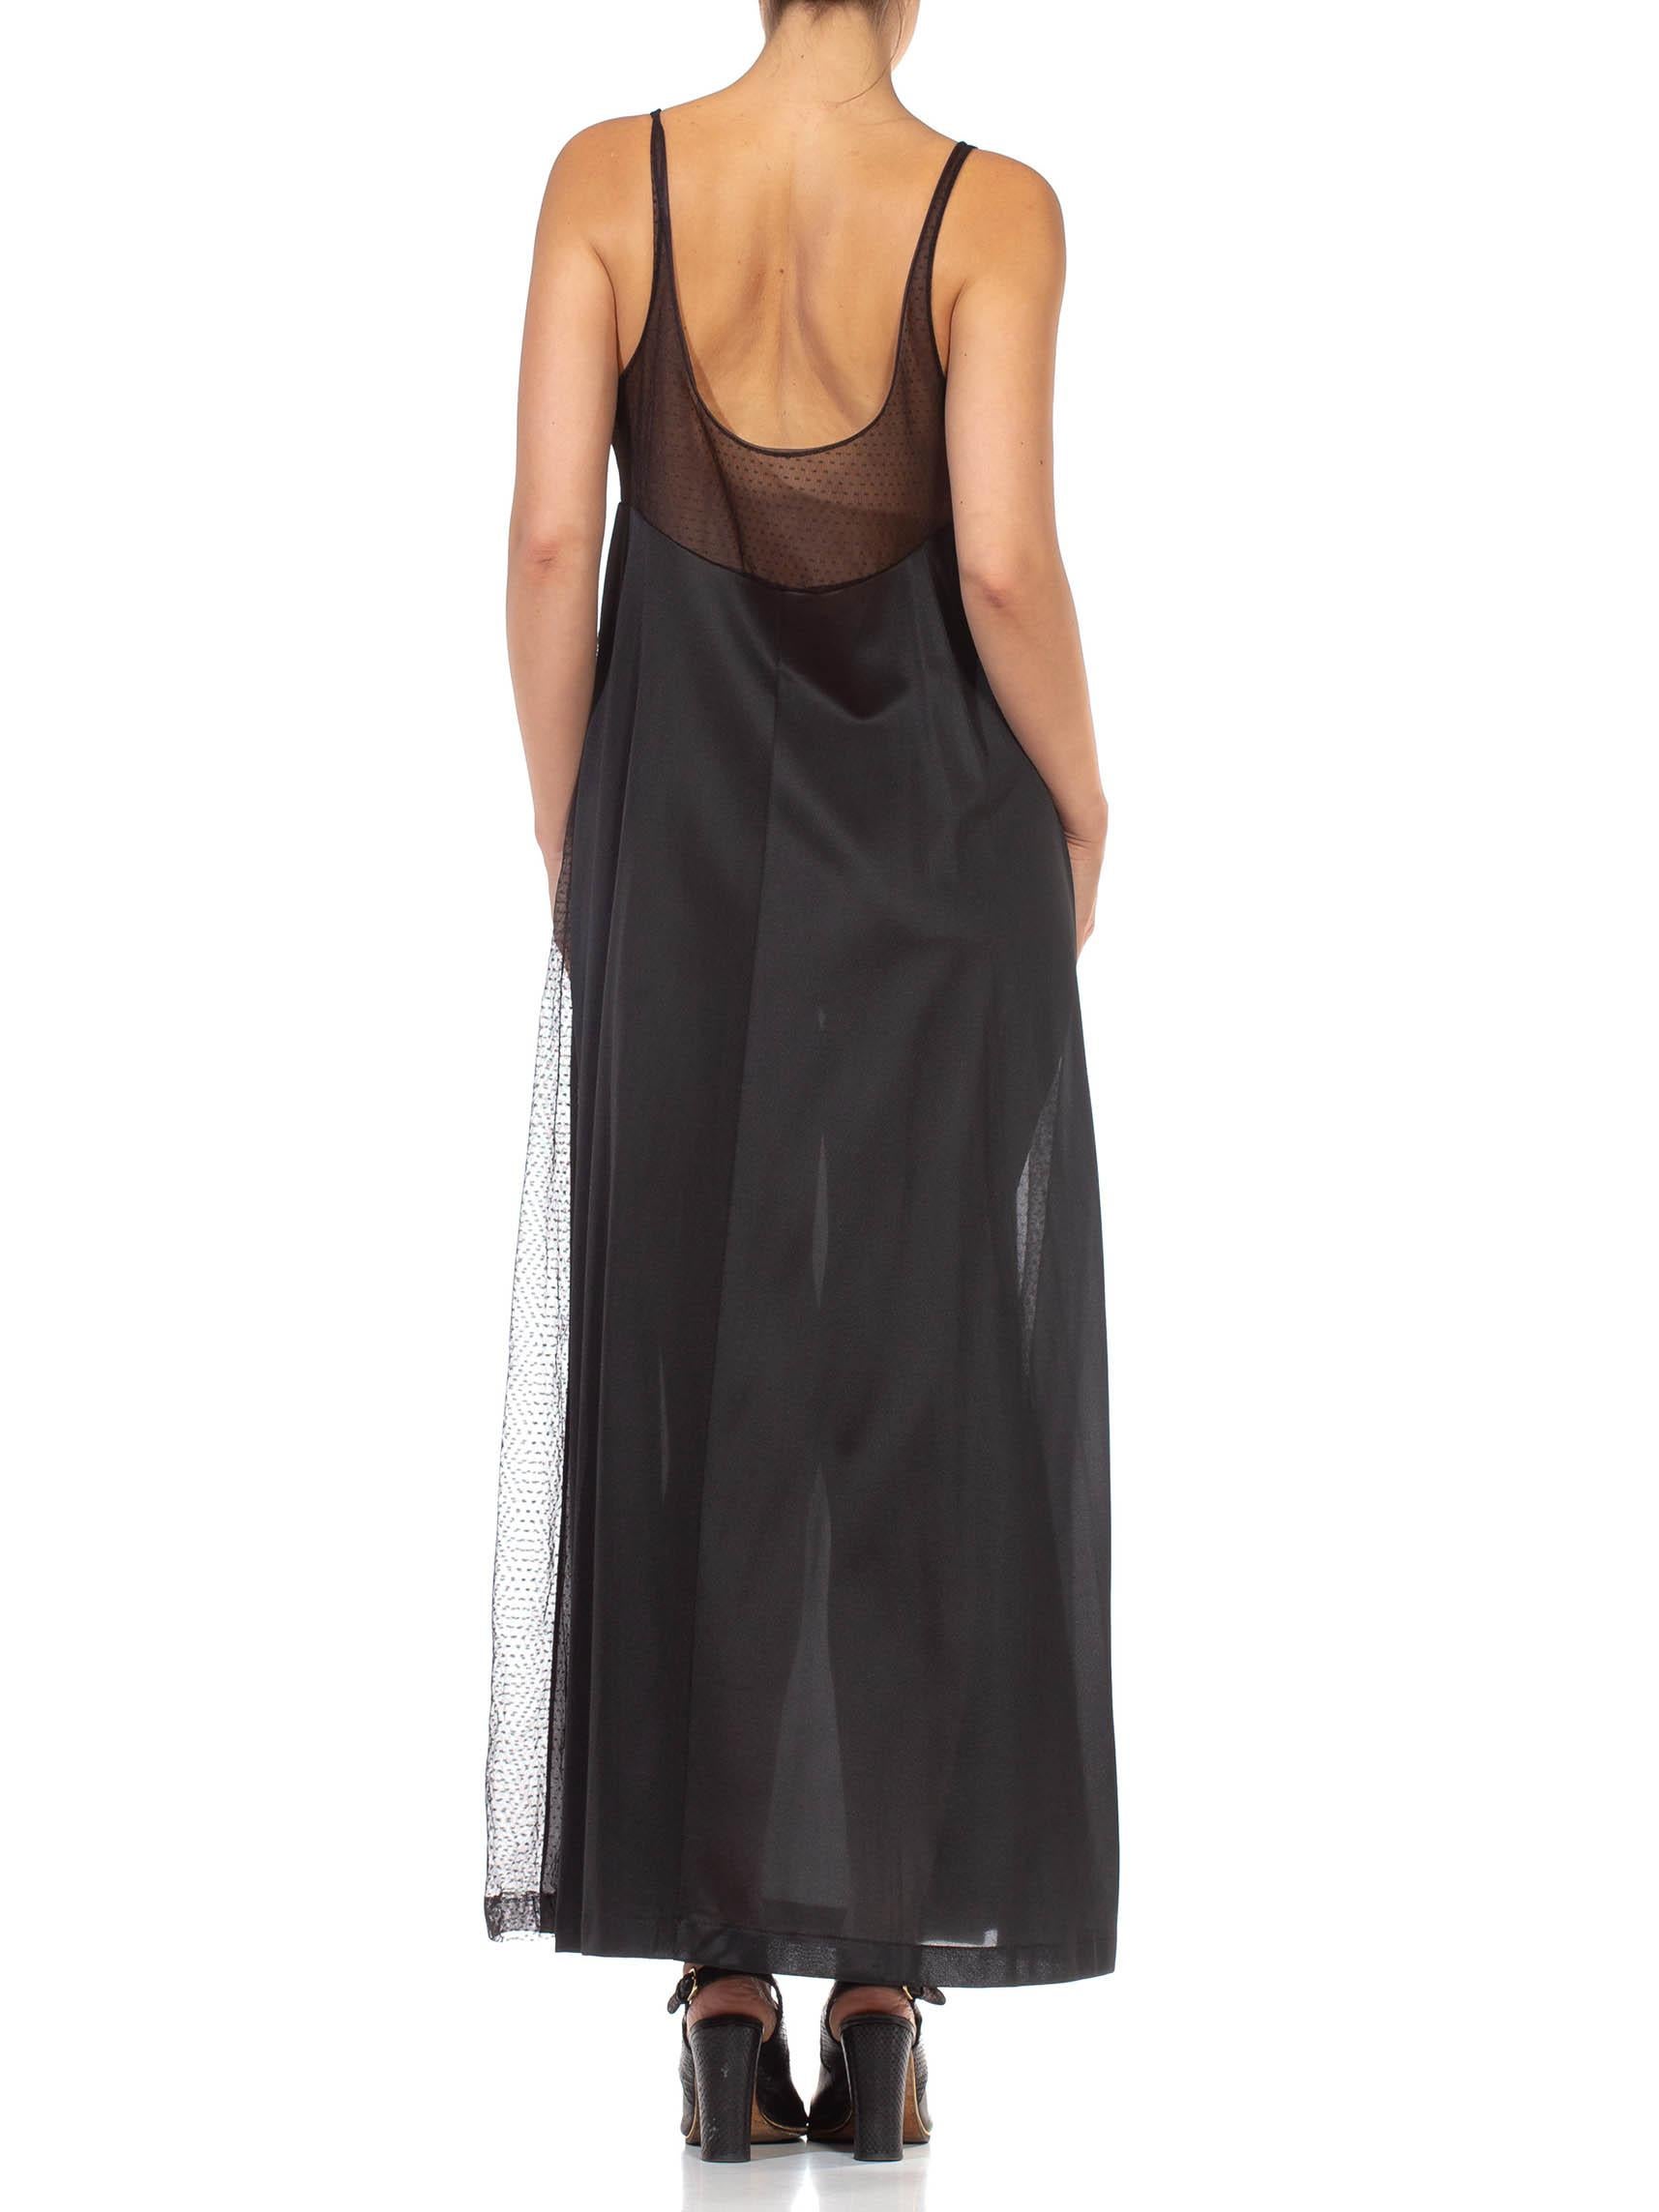 1970S Black Sheer Mesh Bodice Nylon Negligee Slip Dress For Sale 3